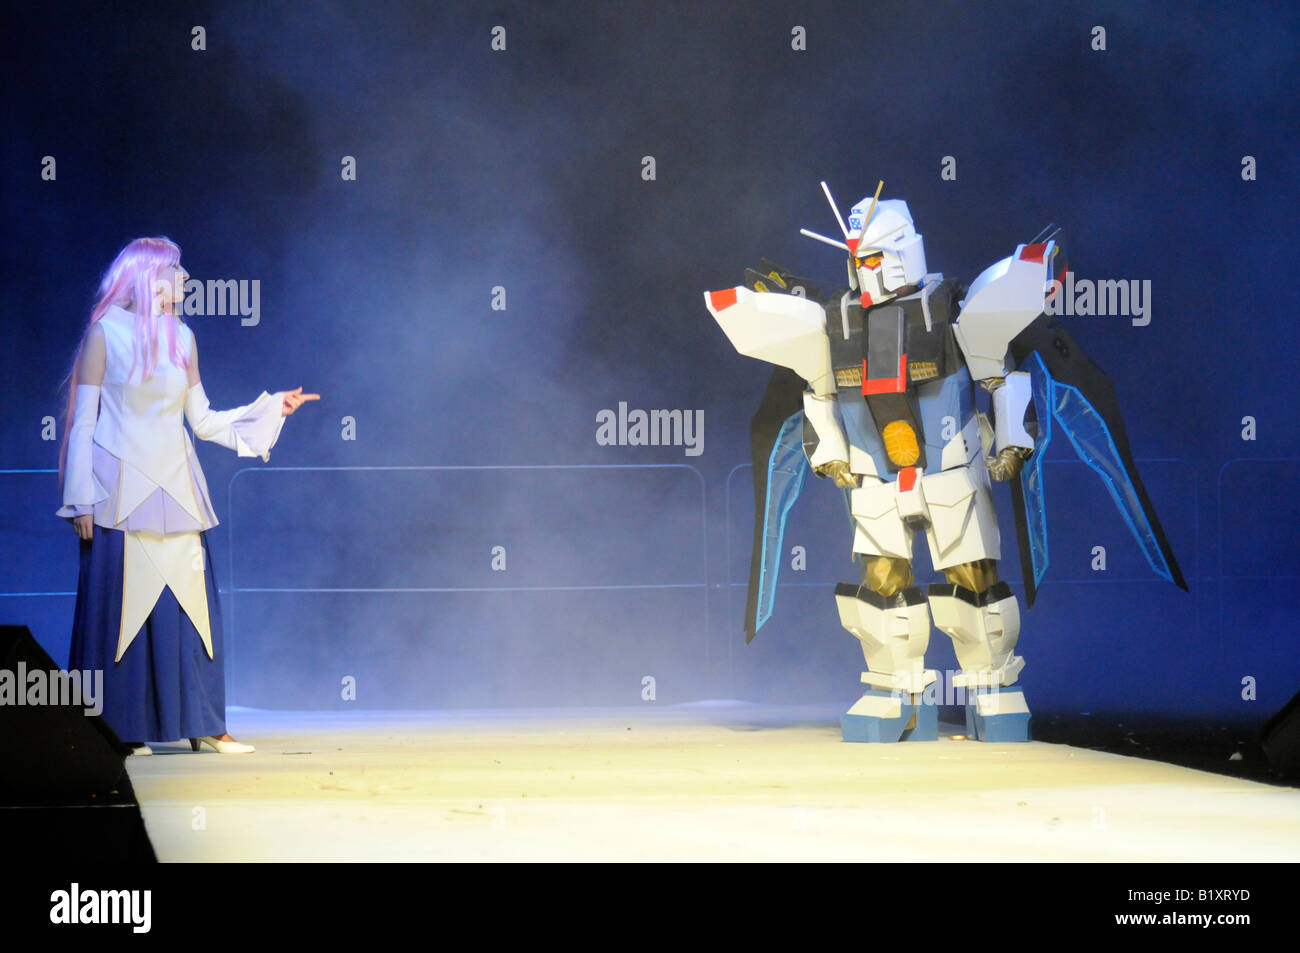 Gli appassionati di manga giapponesi che prendono parte a un concorso cosplay, dove i partecipanti dress up come film o personaggio dei fumetti. Foto Stock